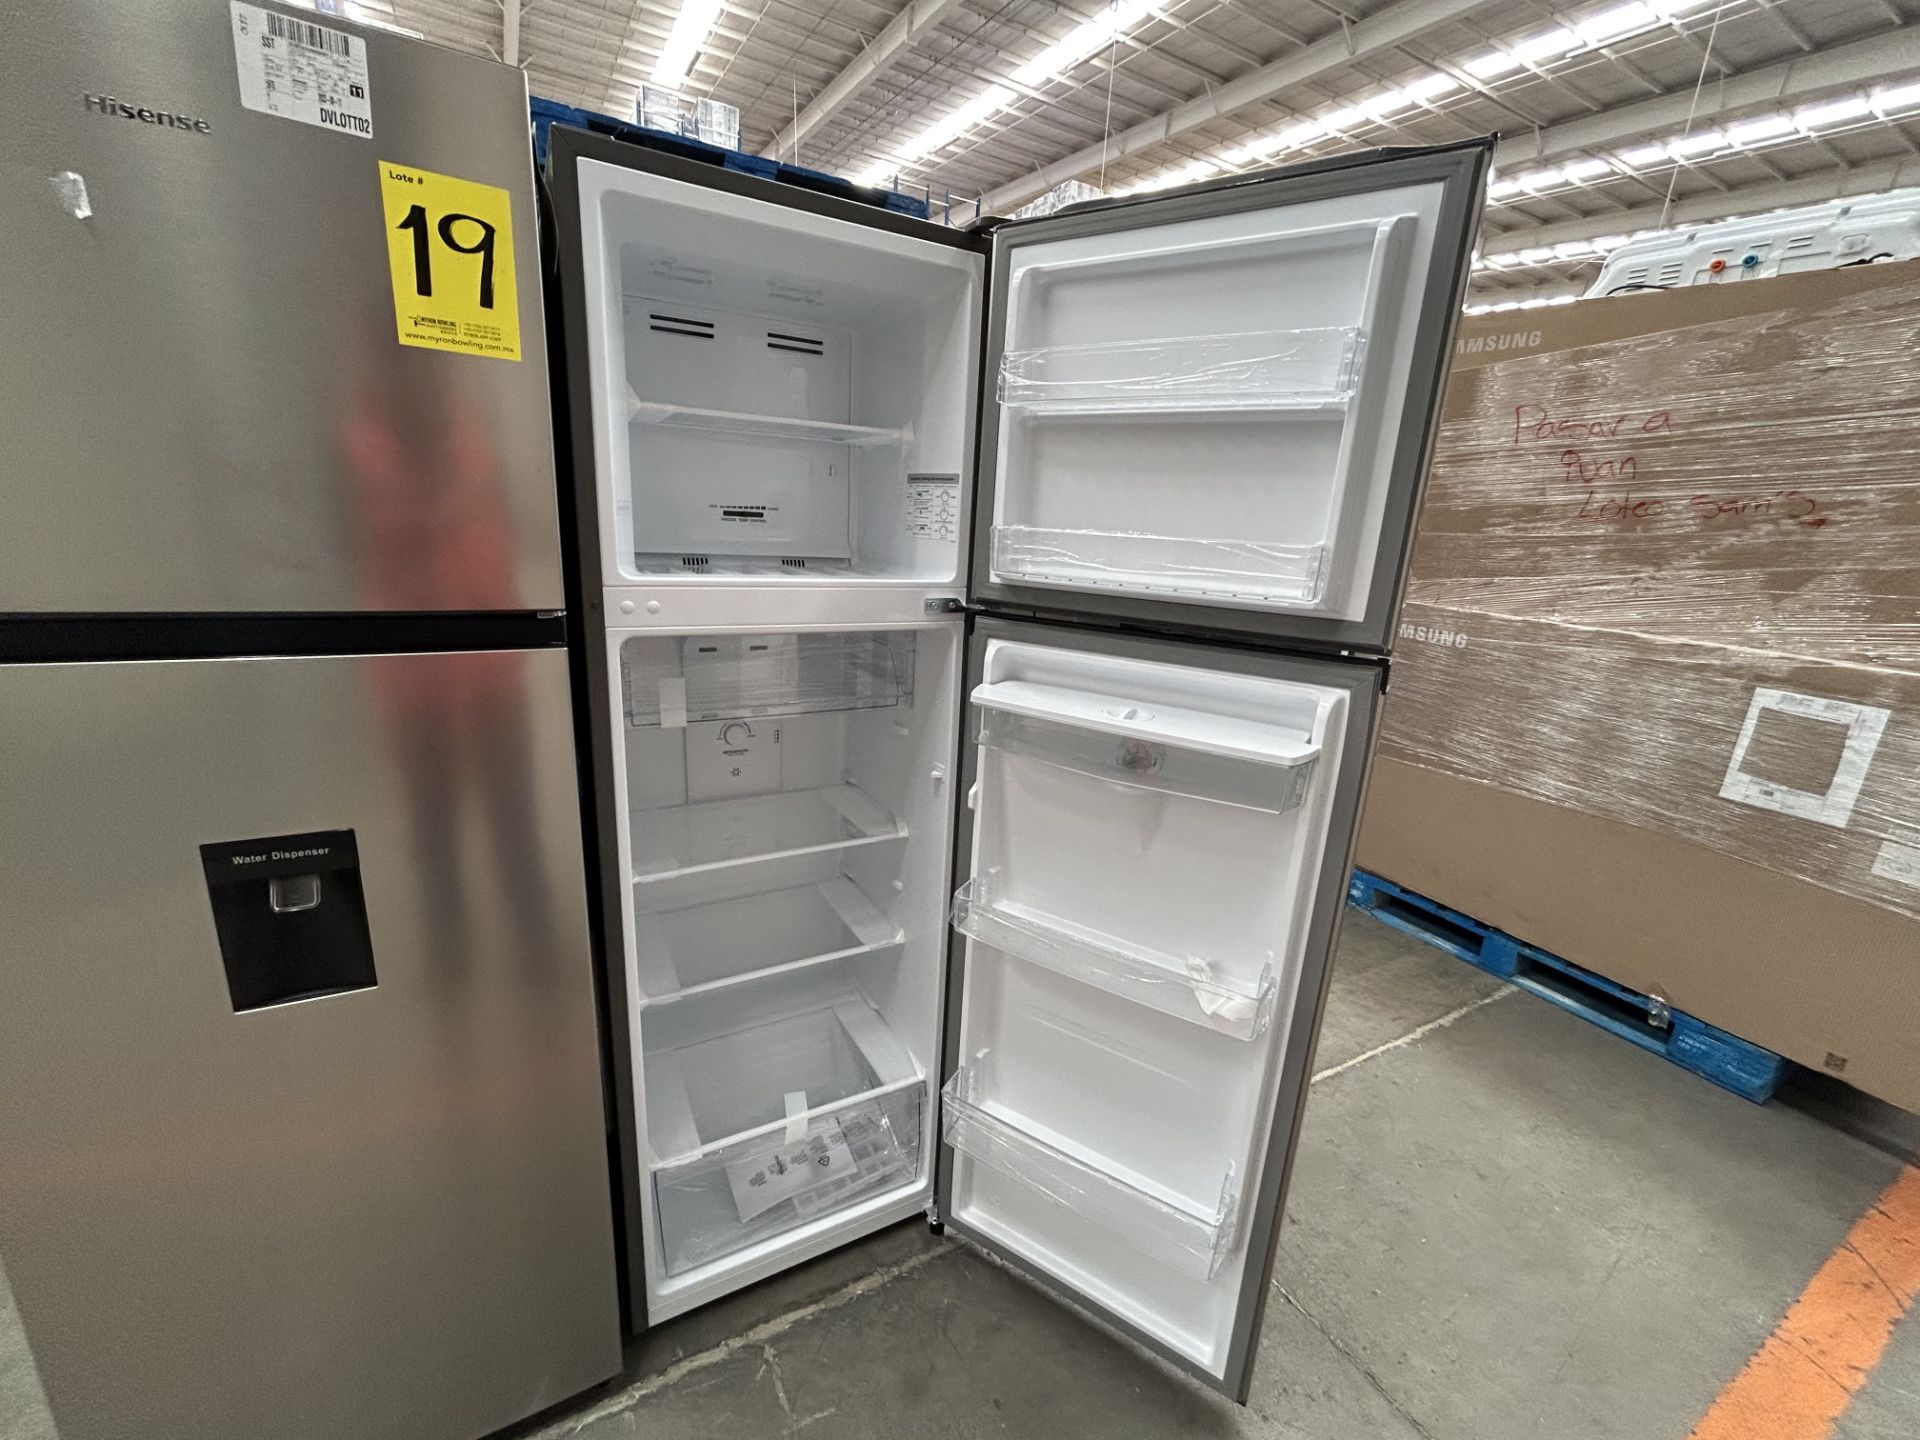 Lote de 2 refrigeradores contiene: 1 Refrigerador con dispensador de agua Marca HISENSE, Modelo RT9 - Image 4 of 6